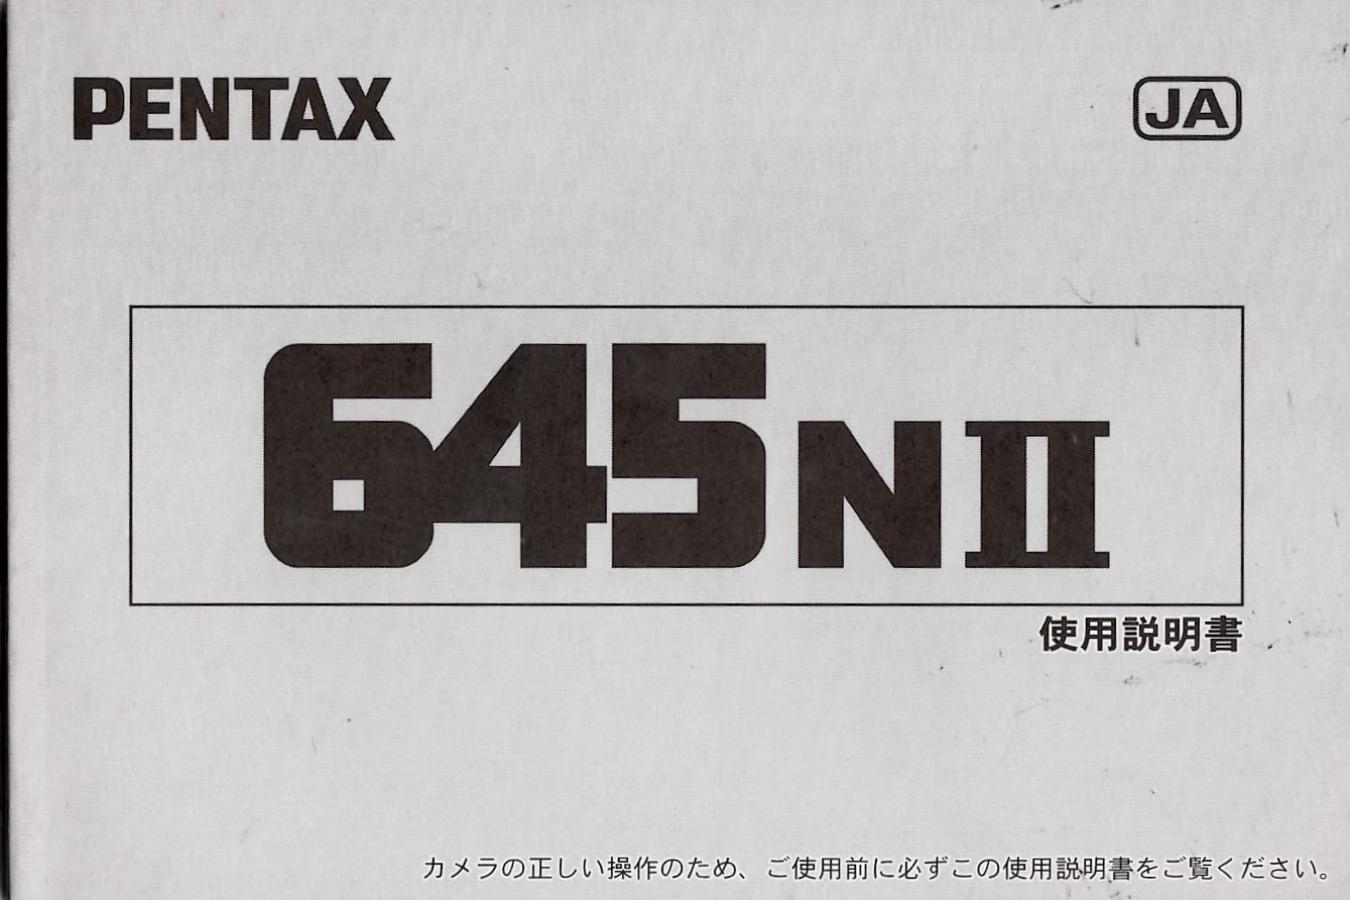 【絶版取説】PENTAX 645NII 取説